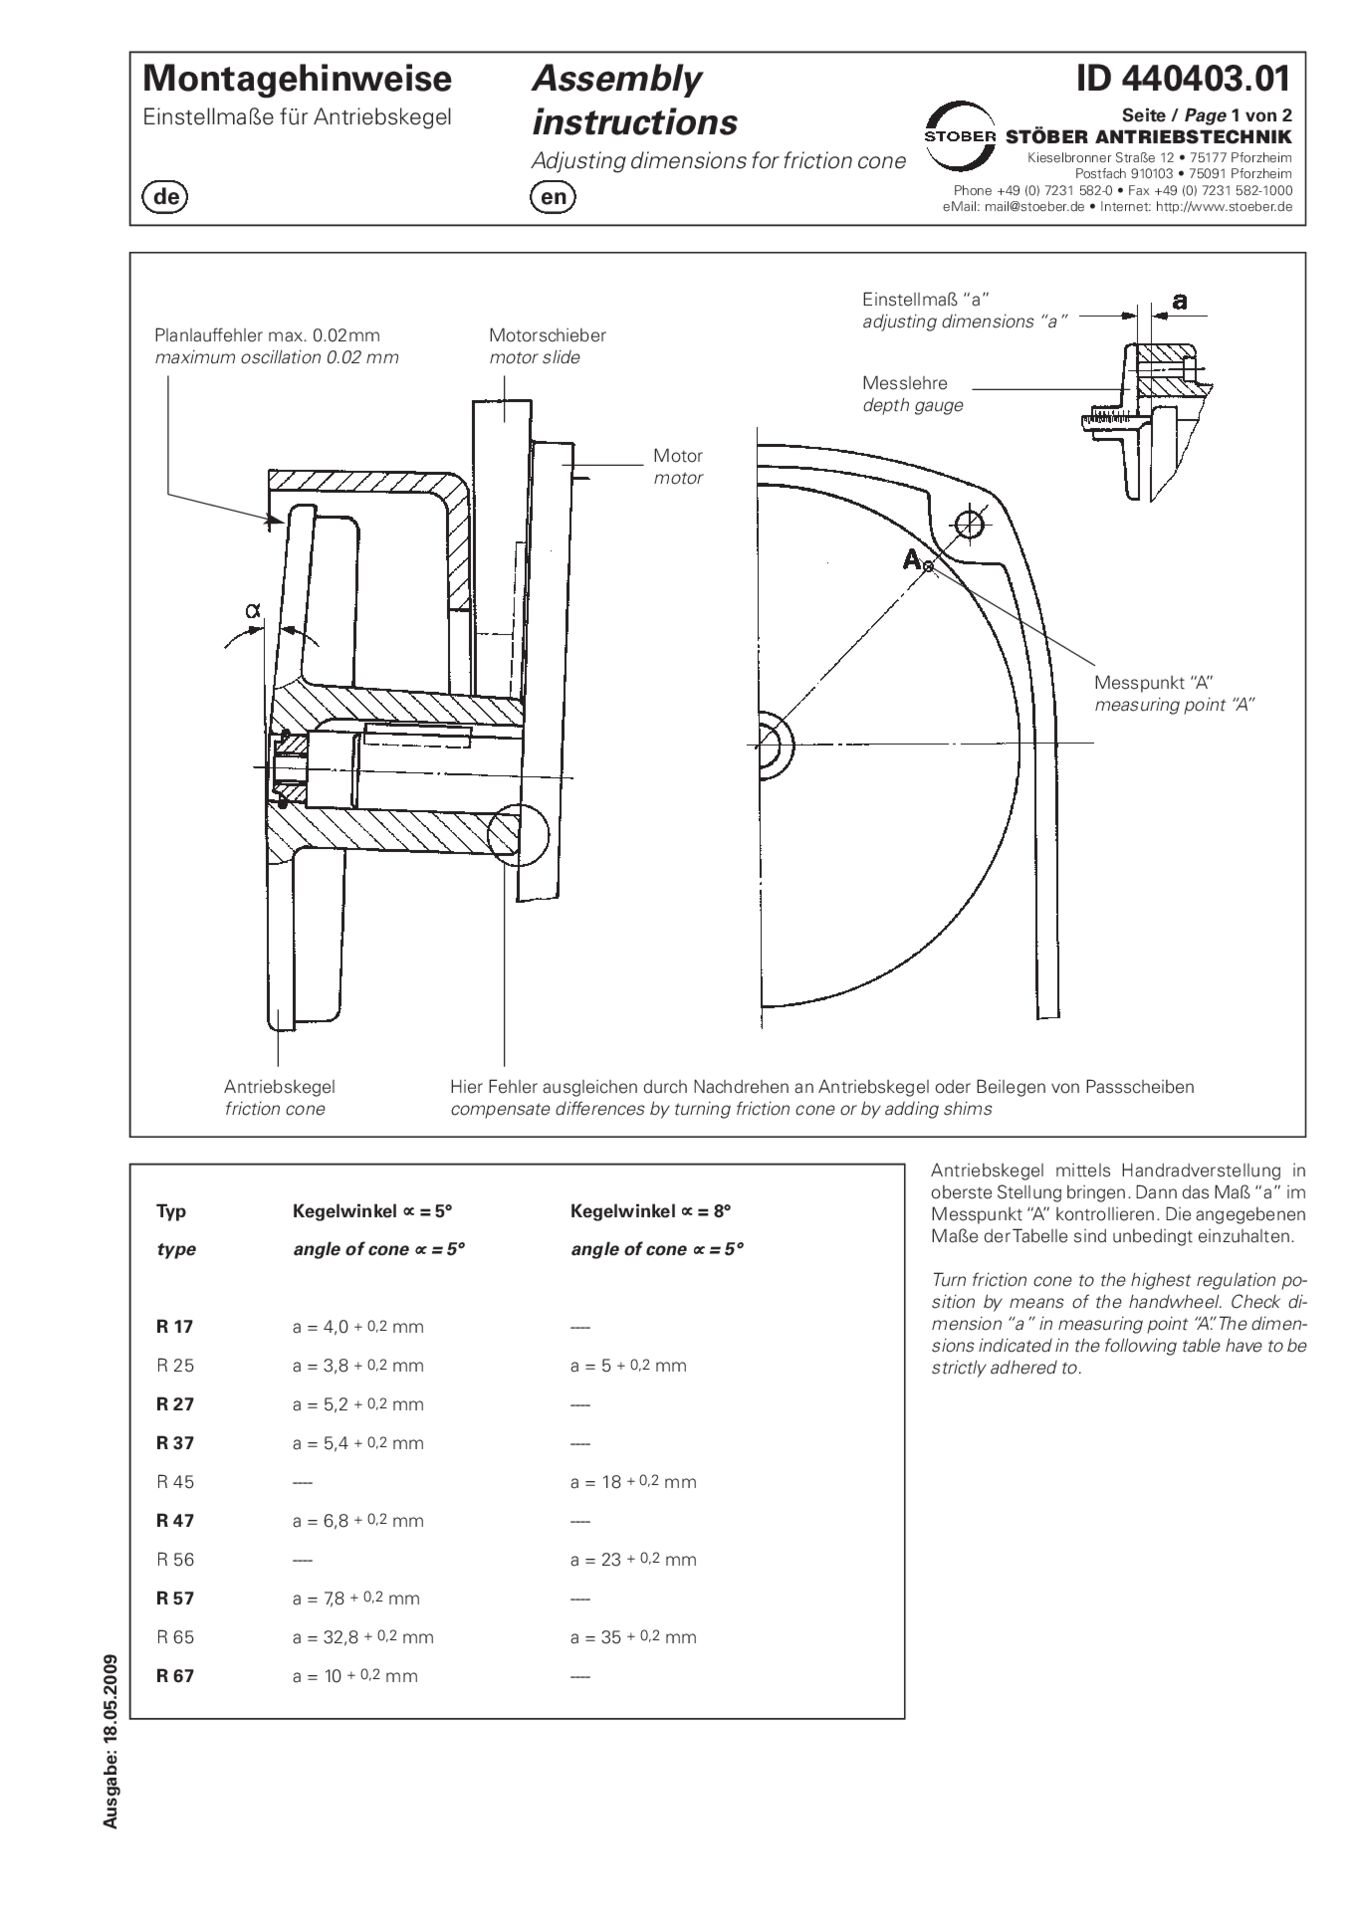 Montageanleitung Einstellmaße für Antriebskegel RAssembly instructions Adjusting dimensions for friction cone R